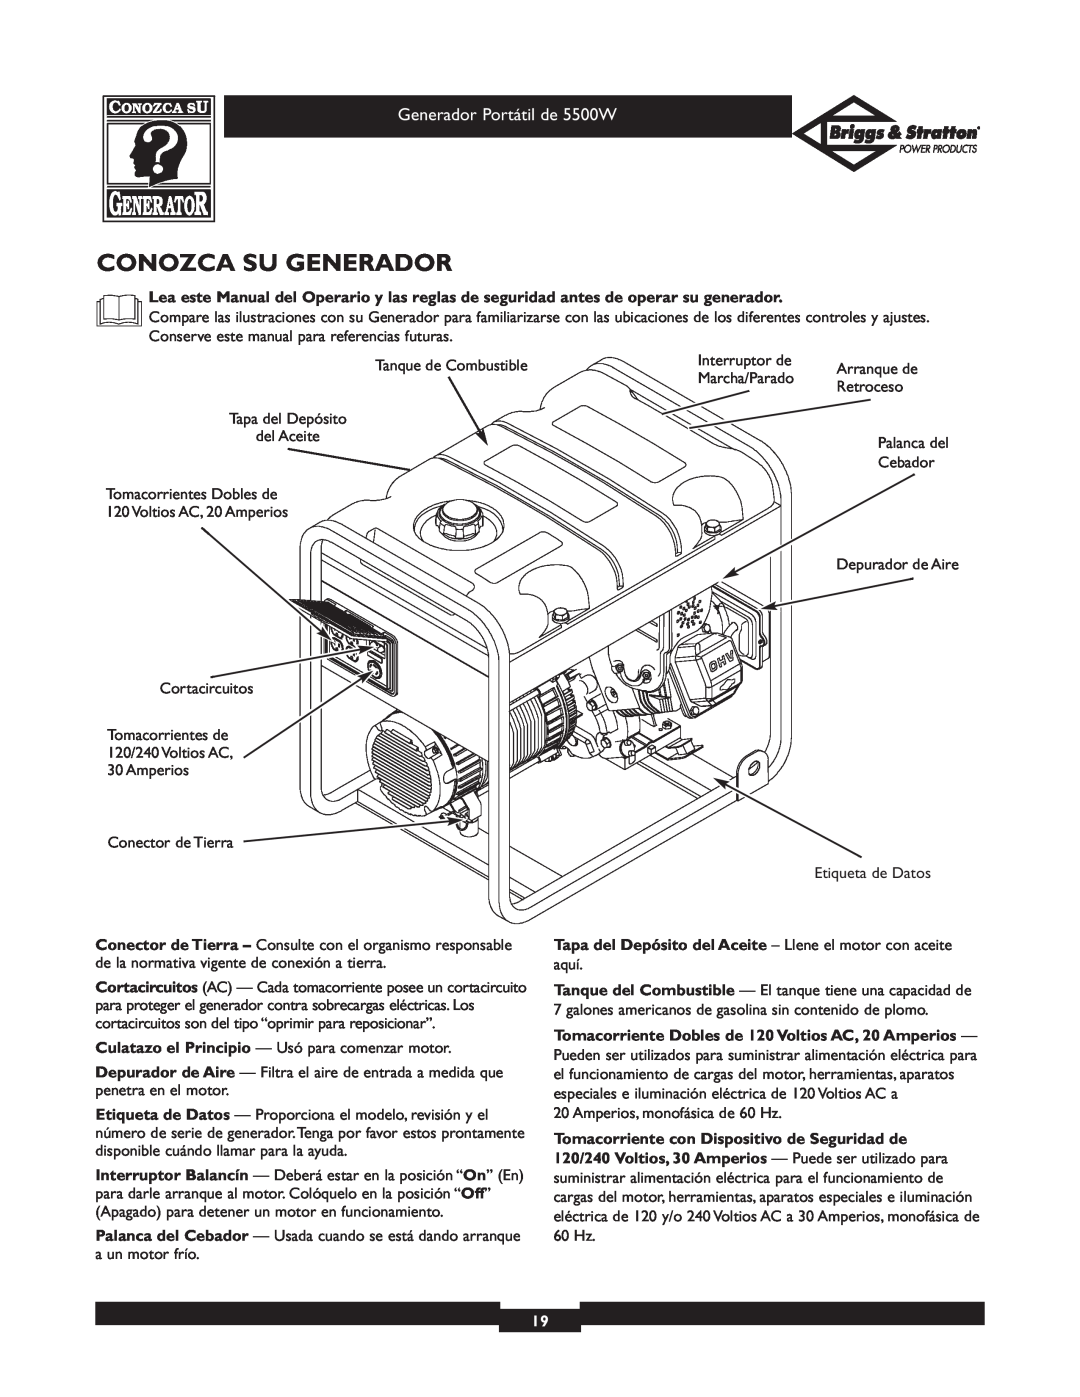 Briggs & Stratton 030209-1 operating instructions Conozca Su Generador, Tomacorriente con Dispositivo de Seguridad de 